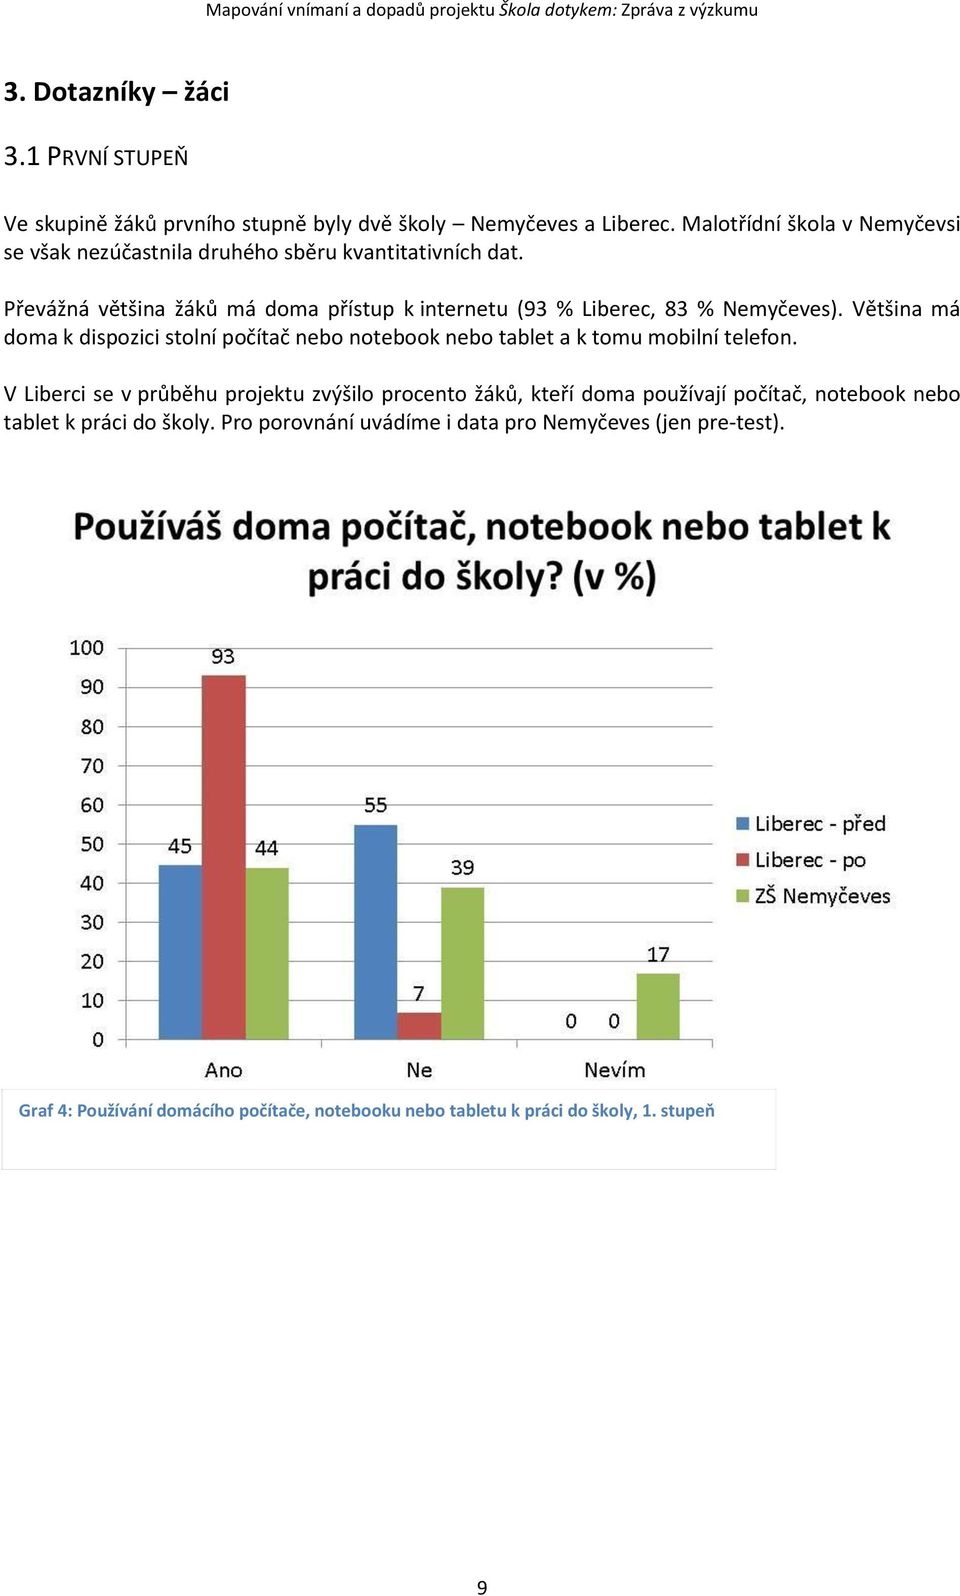 Převážná většina žáků má doma přístup k internetu (93 % Liberec, 83 % Nemyčeves).